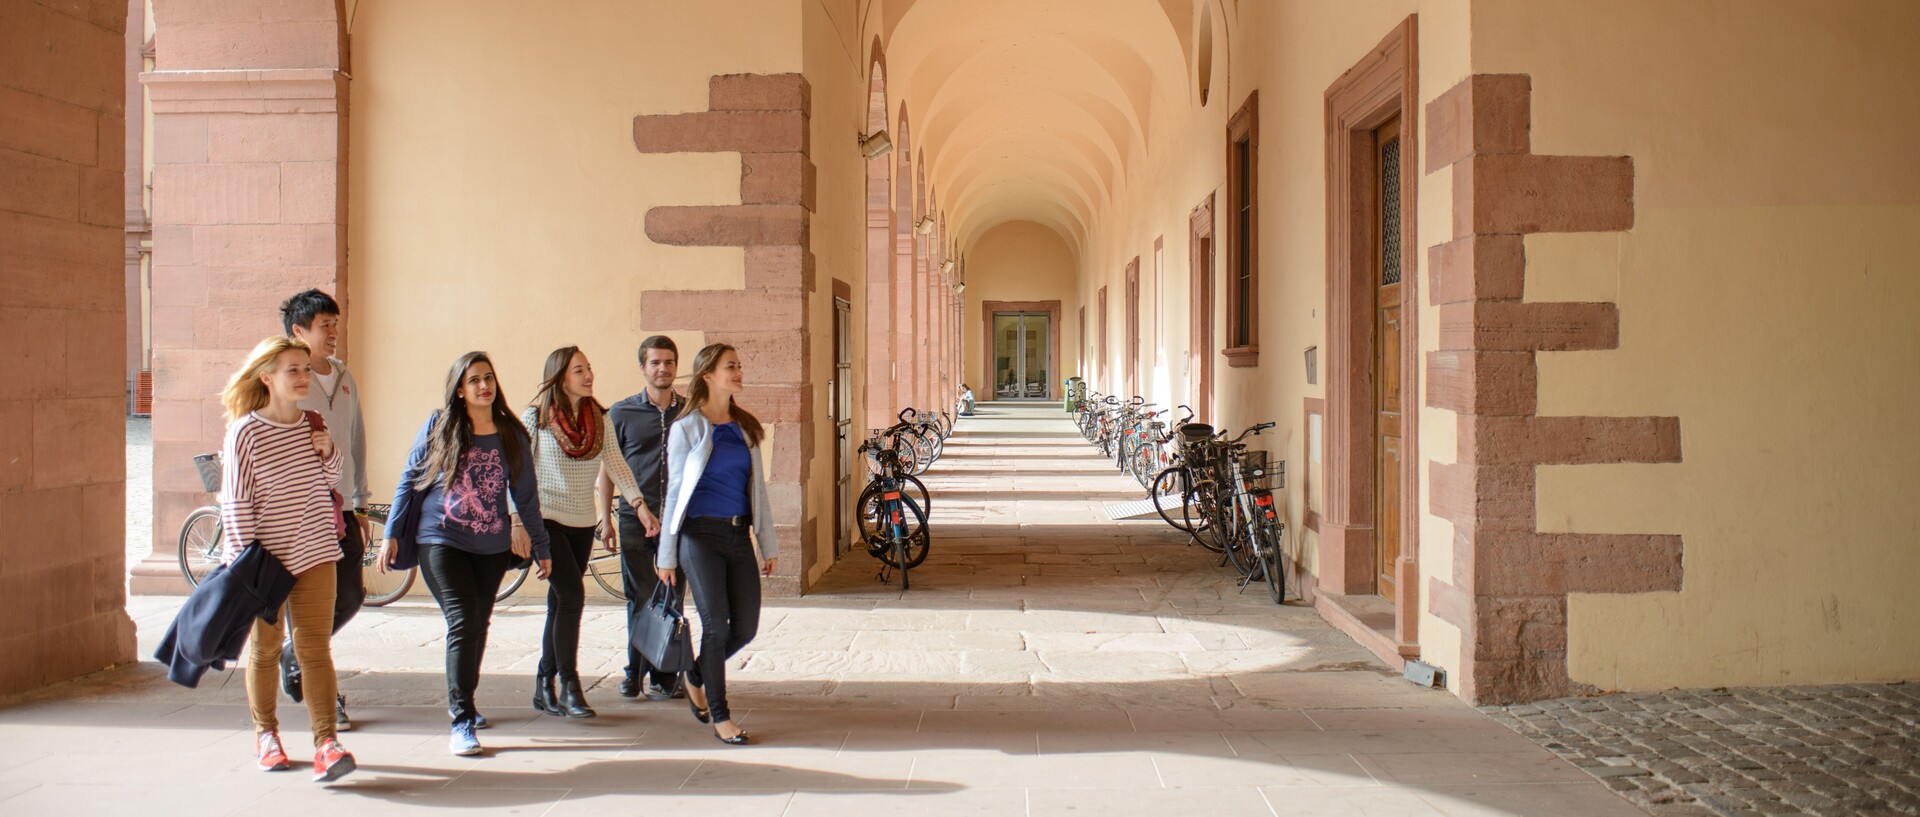 Studierende laufen durch die Arkaden des Schlosses